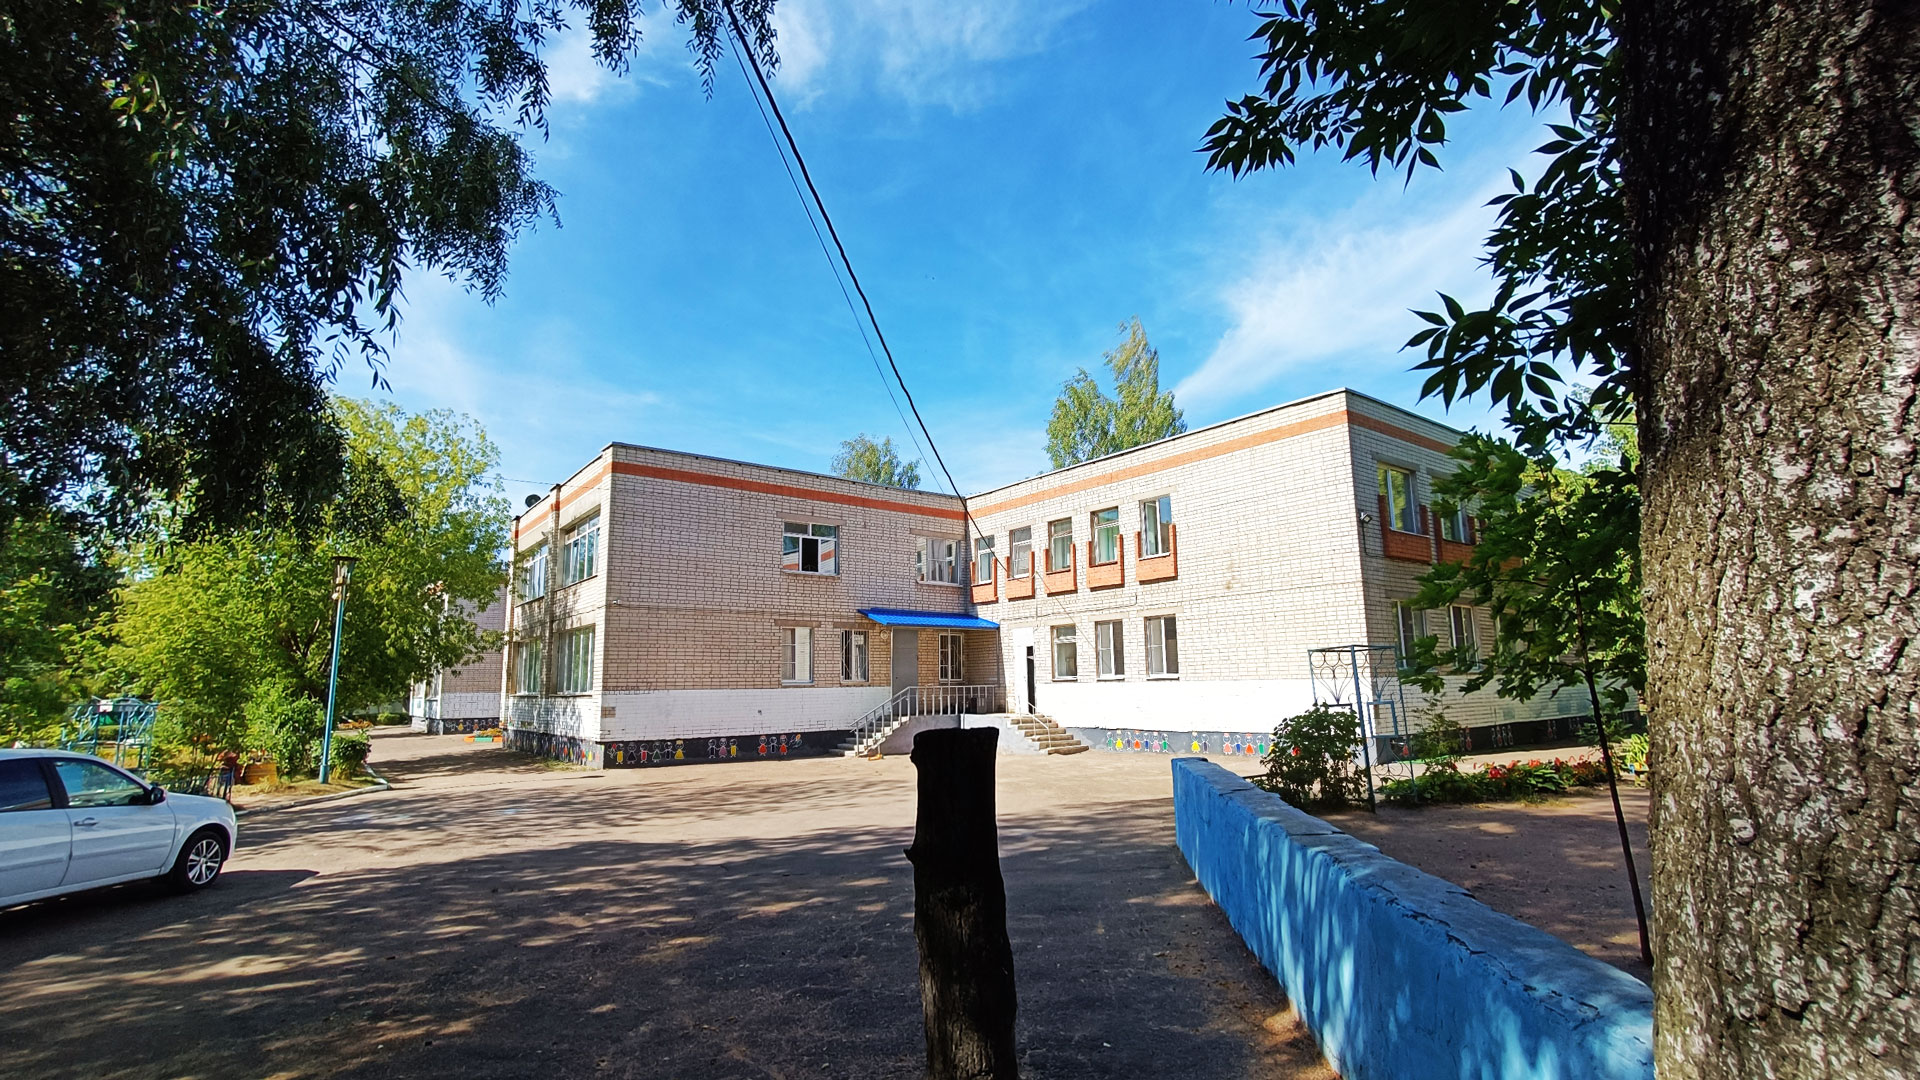 Детский сад 144 Ярославль: главный вход в здание садика.